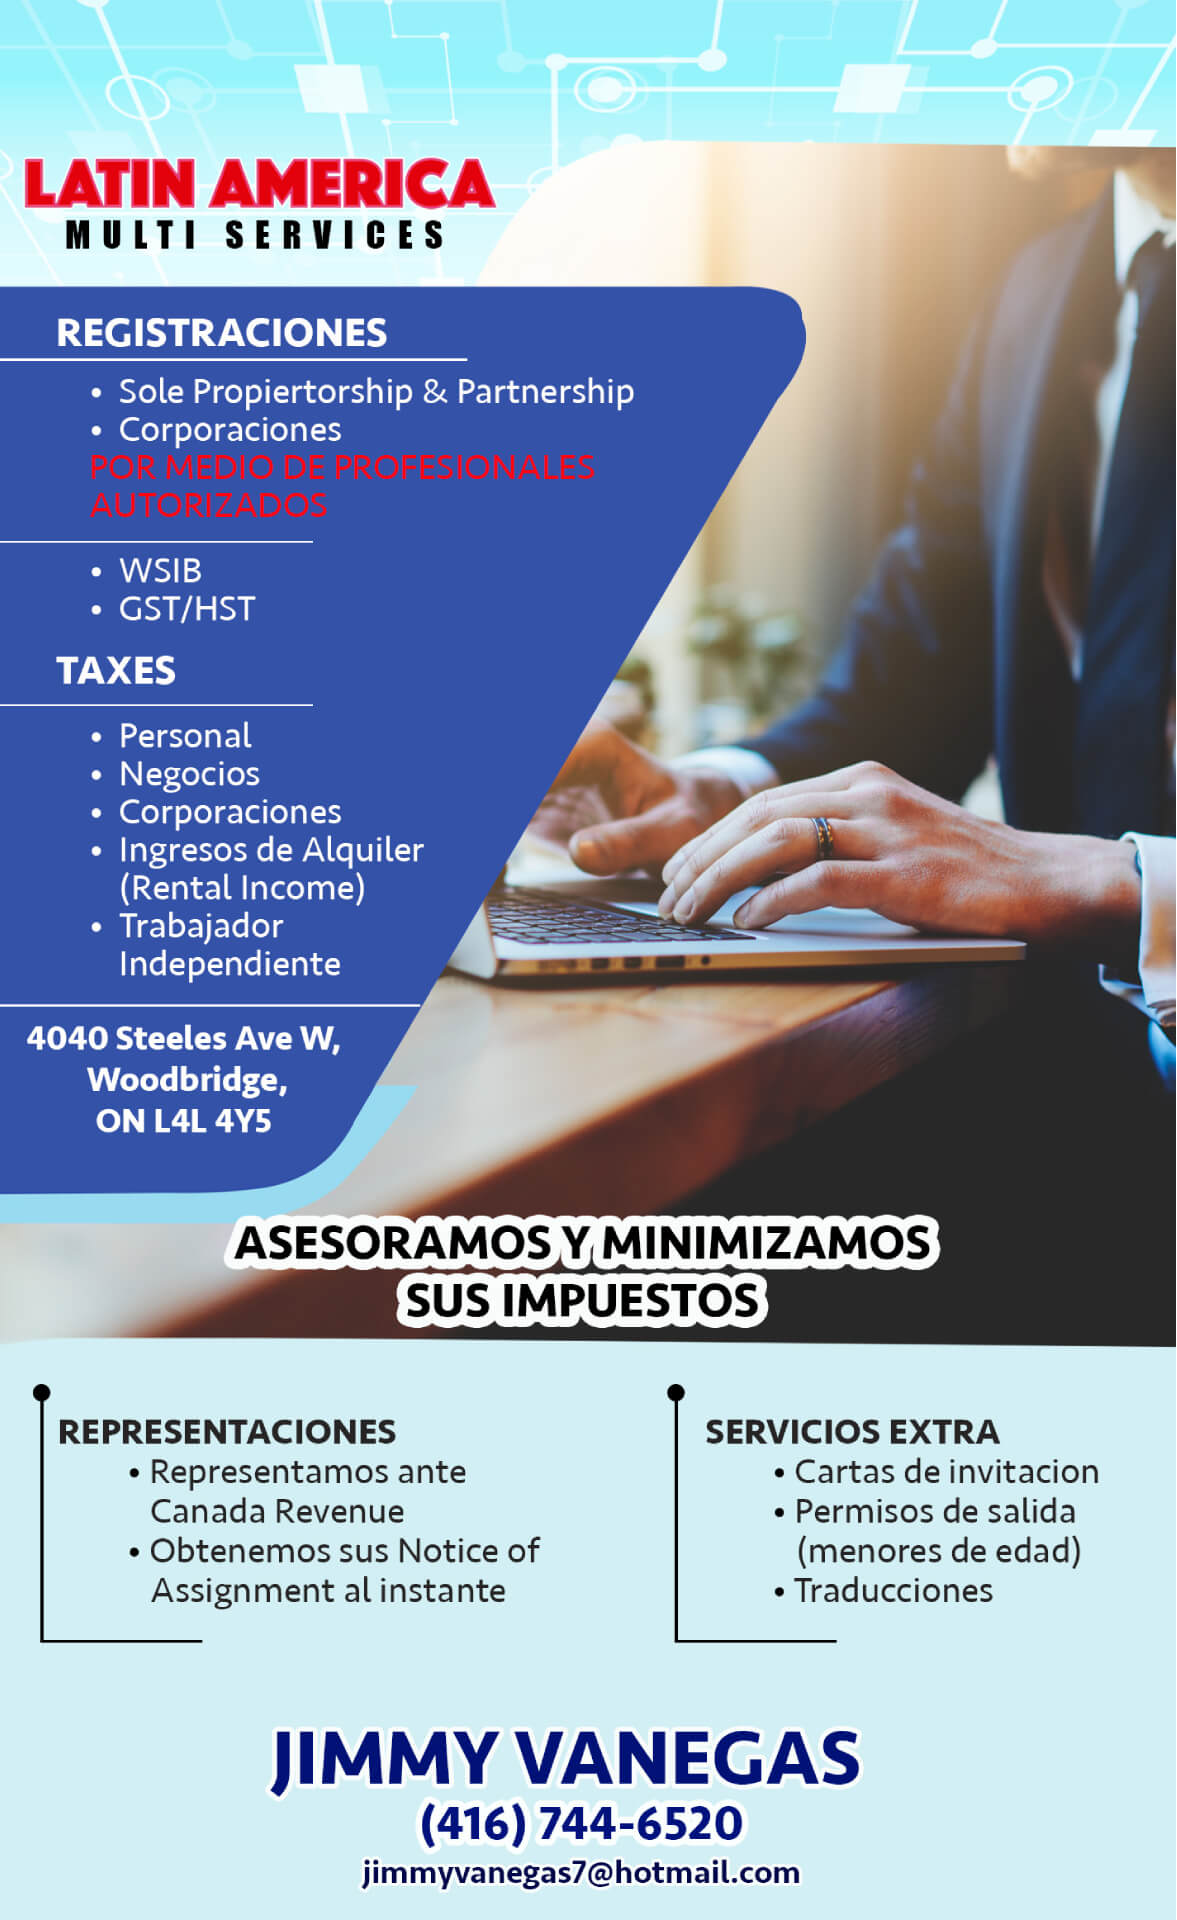 Latin America Multi Services